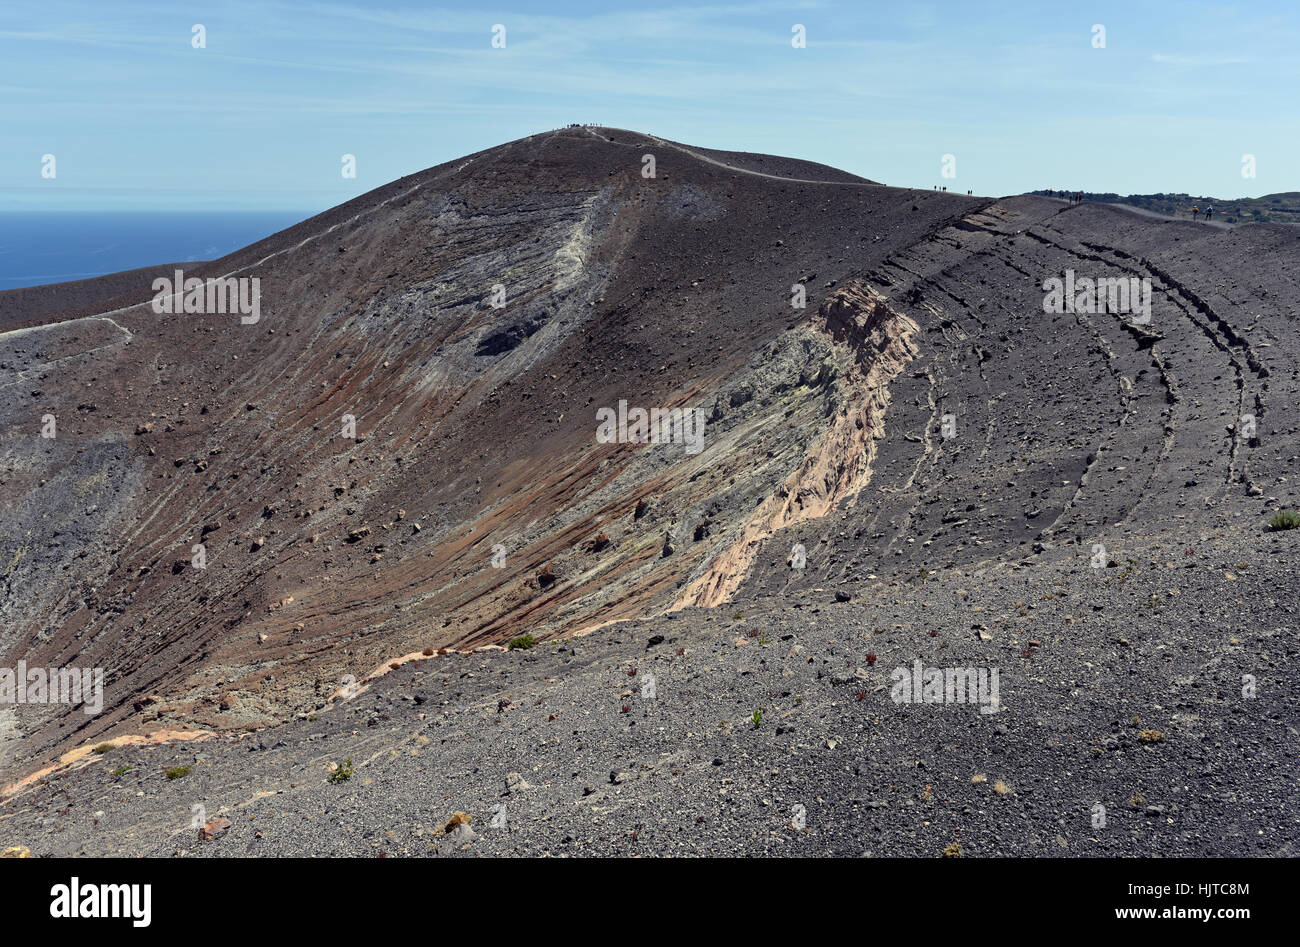 Hiking around the impressive grand crater of Vulcano Island Stock Photo